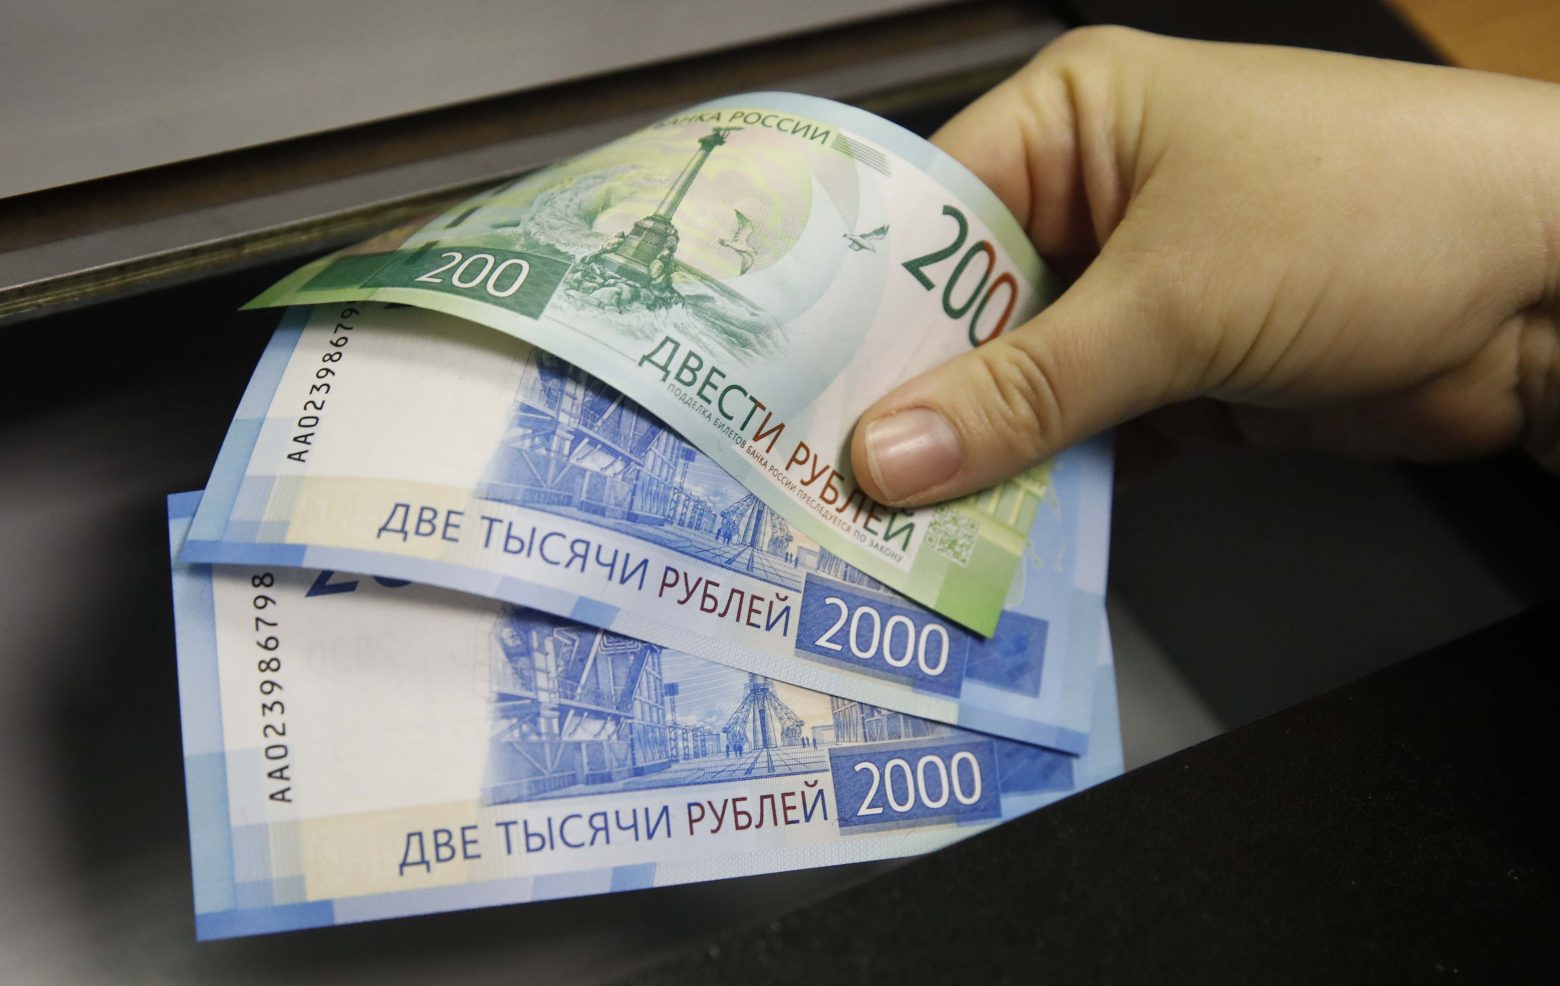 Ρωσία - Κέρδισε 400 χιλιάδες ευρώ στη λοταρία χωρίς να βρει ούτε έναν αριθμό